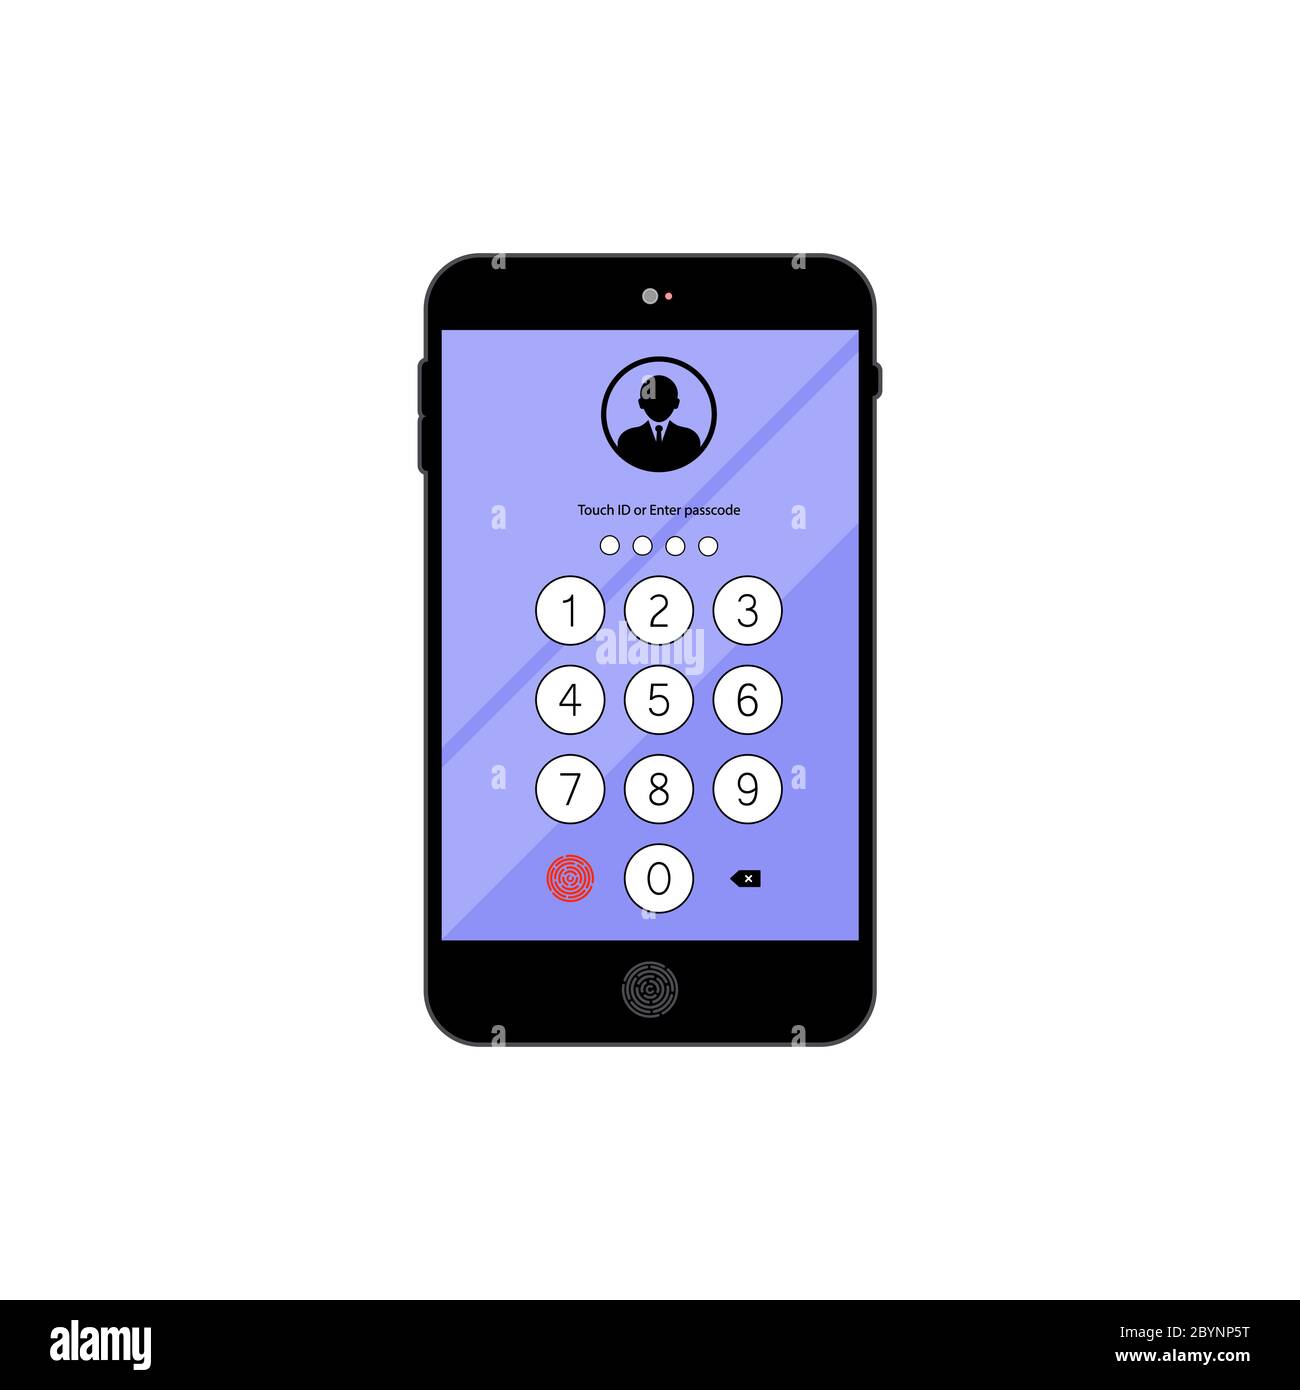 Appuyez sur ID ou saisissez le code, le mot de passe, l'interface sur l'icône du smartphone, sur fond blanc isolé. Vecteur EPS 10 Illustration de Vecteur